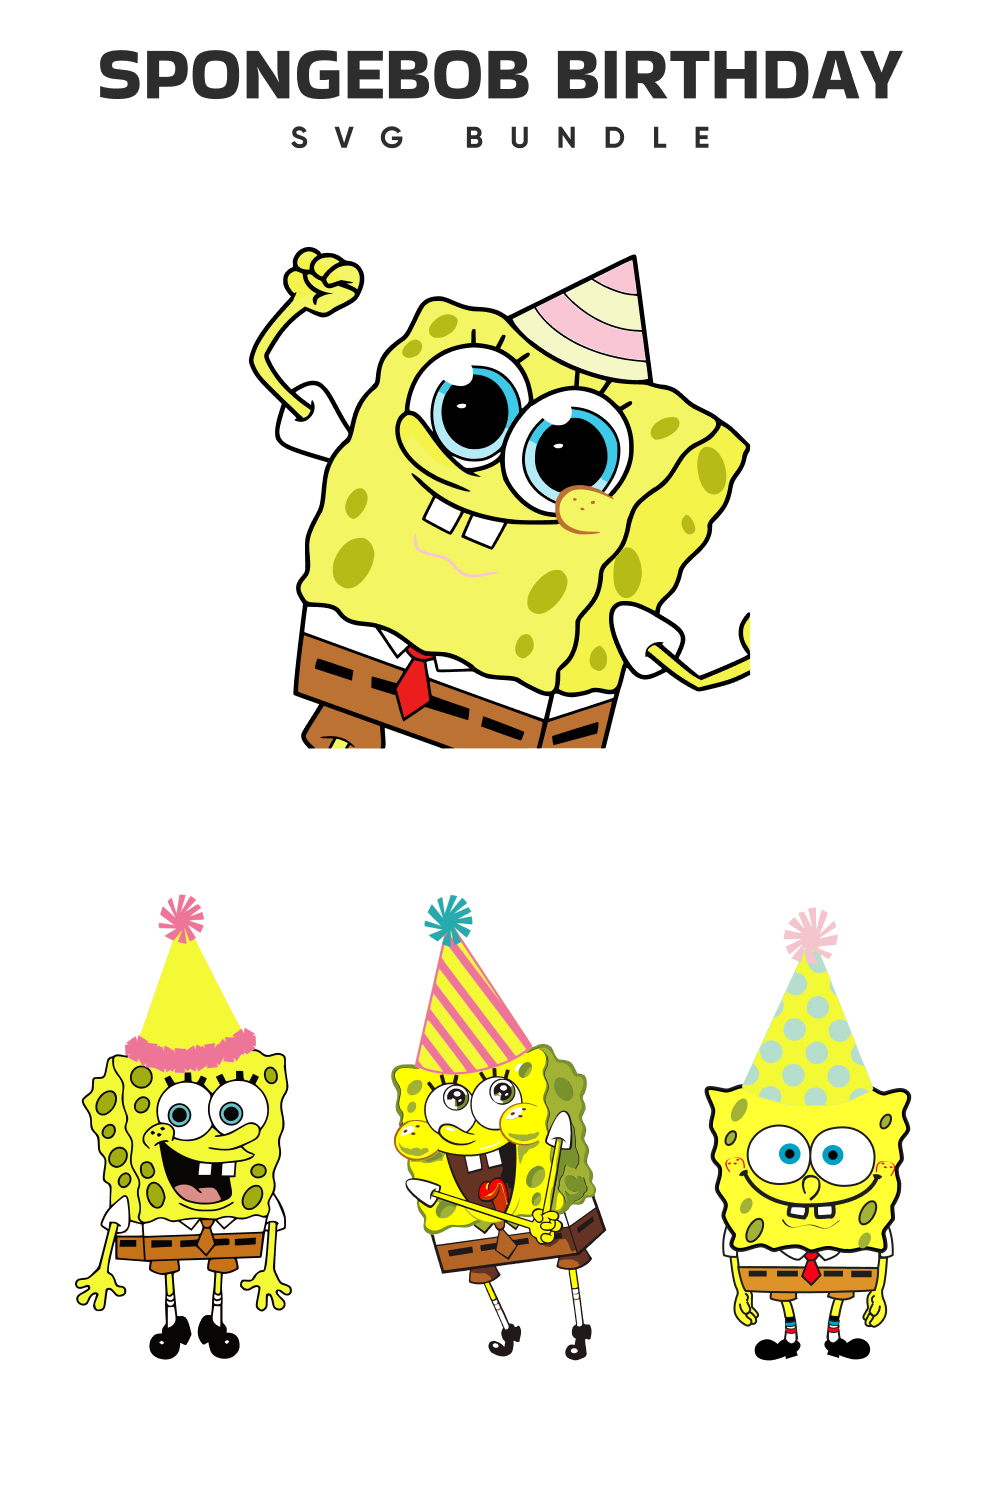 Festive sponge bob birthday day.